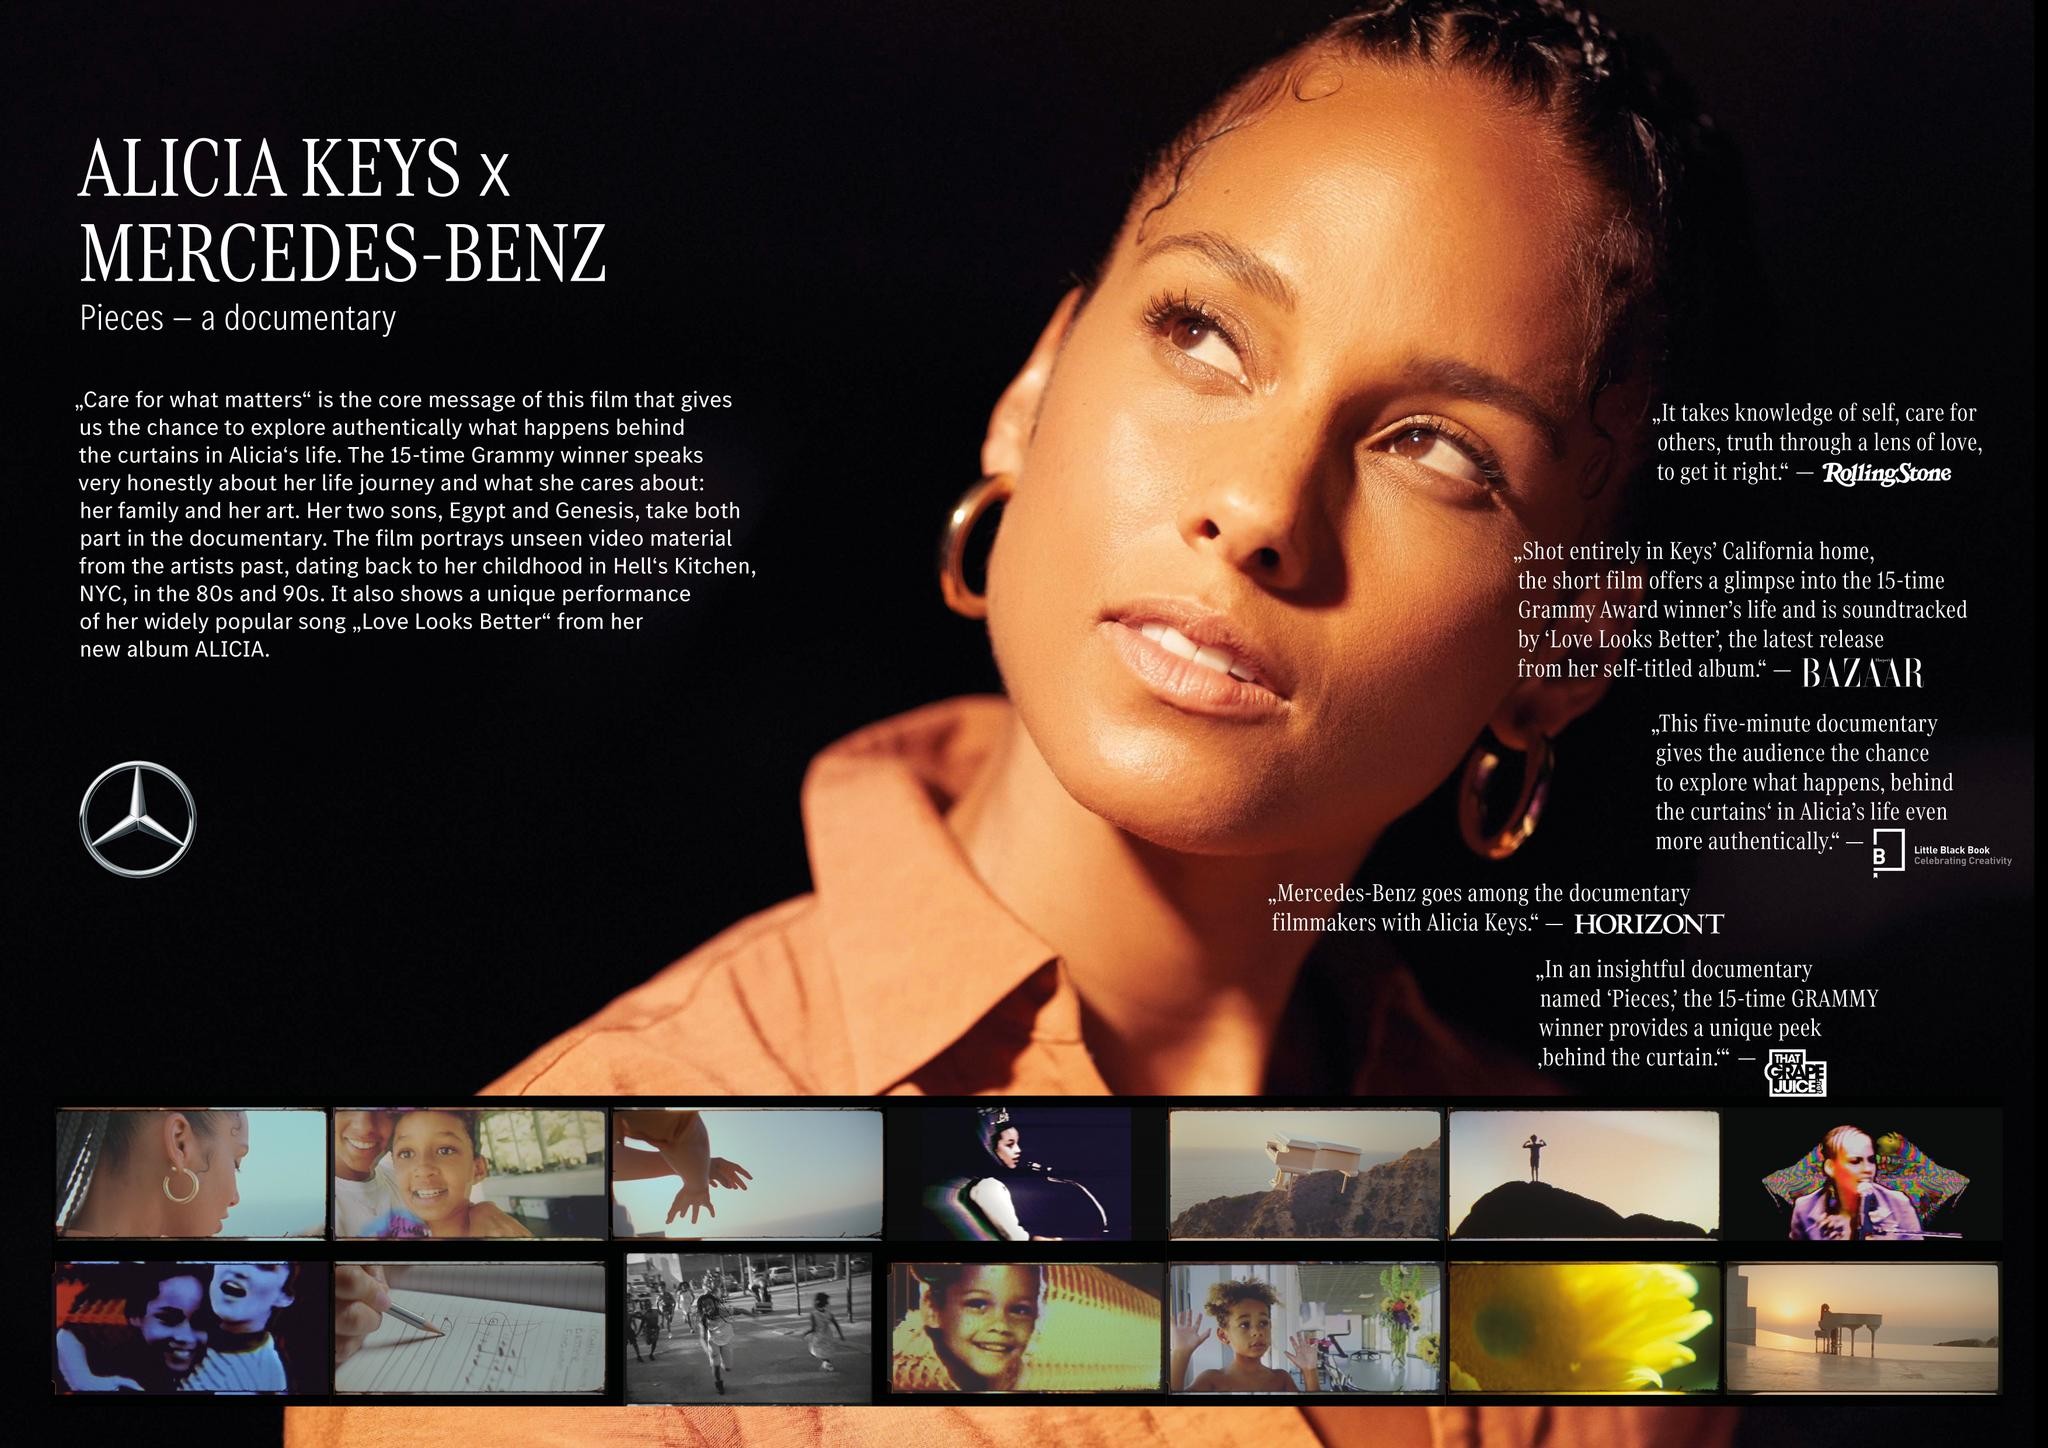 Mercedes-Benz x Alicia Keys “Pieces”